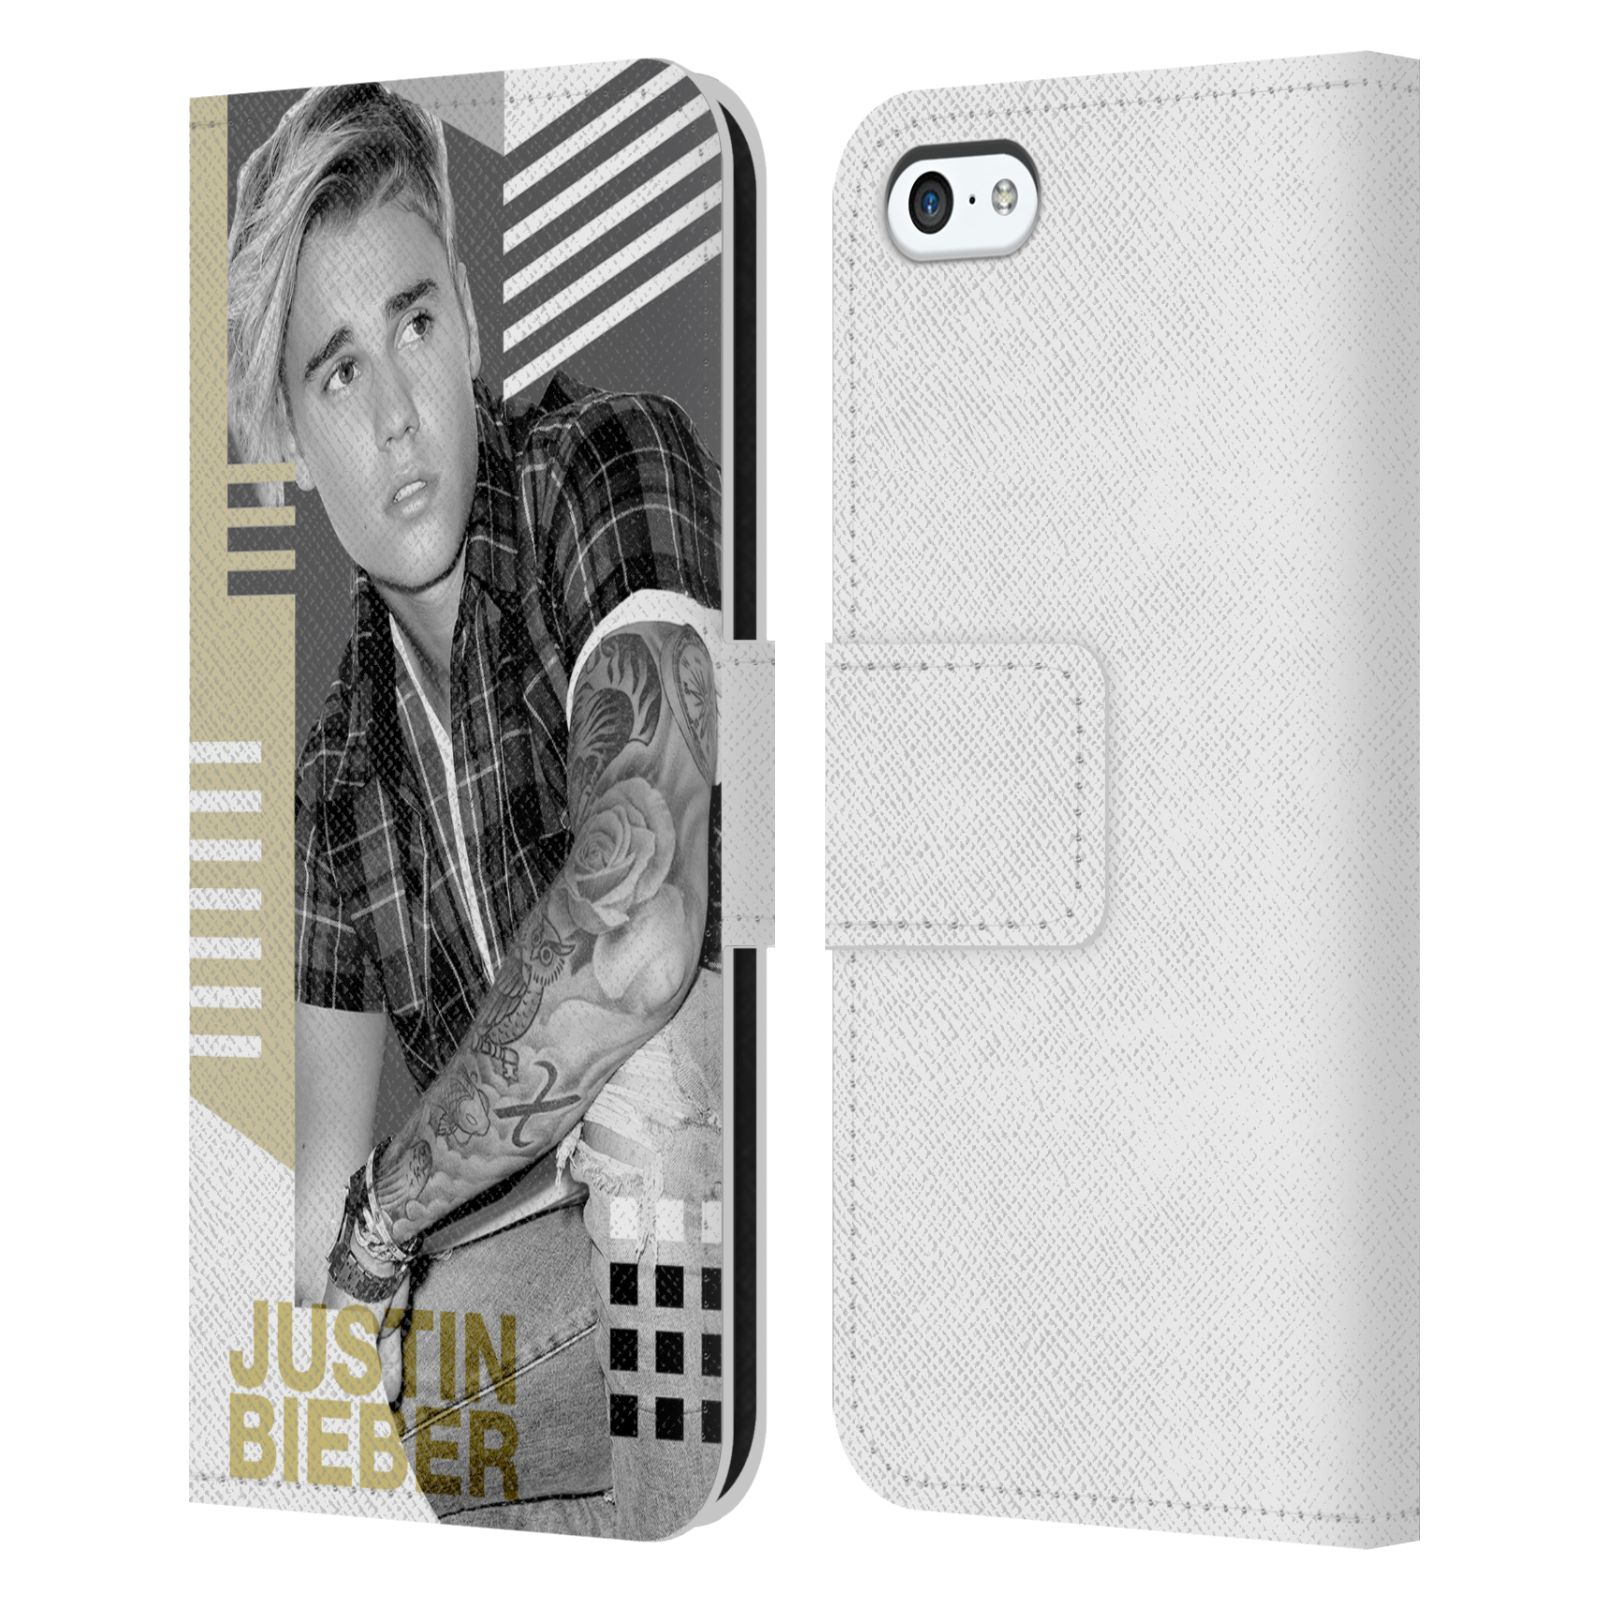 HEAD CASE Flipové pouzdro pro mobil Apple Iphone 5C originální potisk Justin Bieber tvary foto